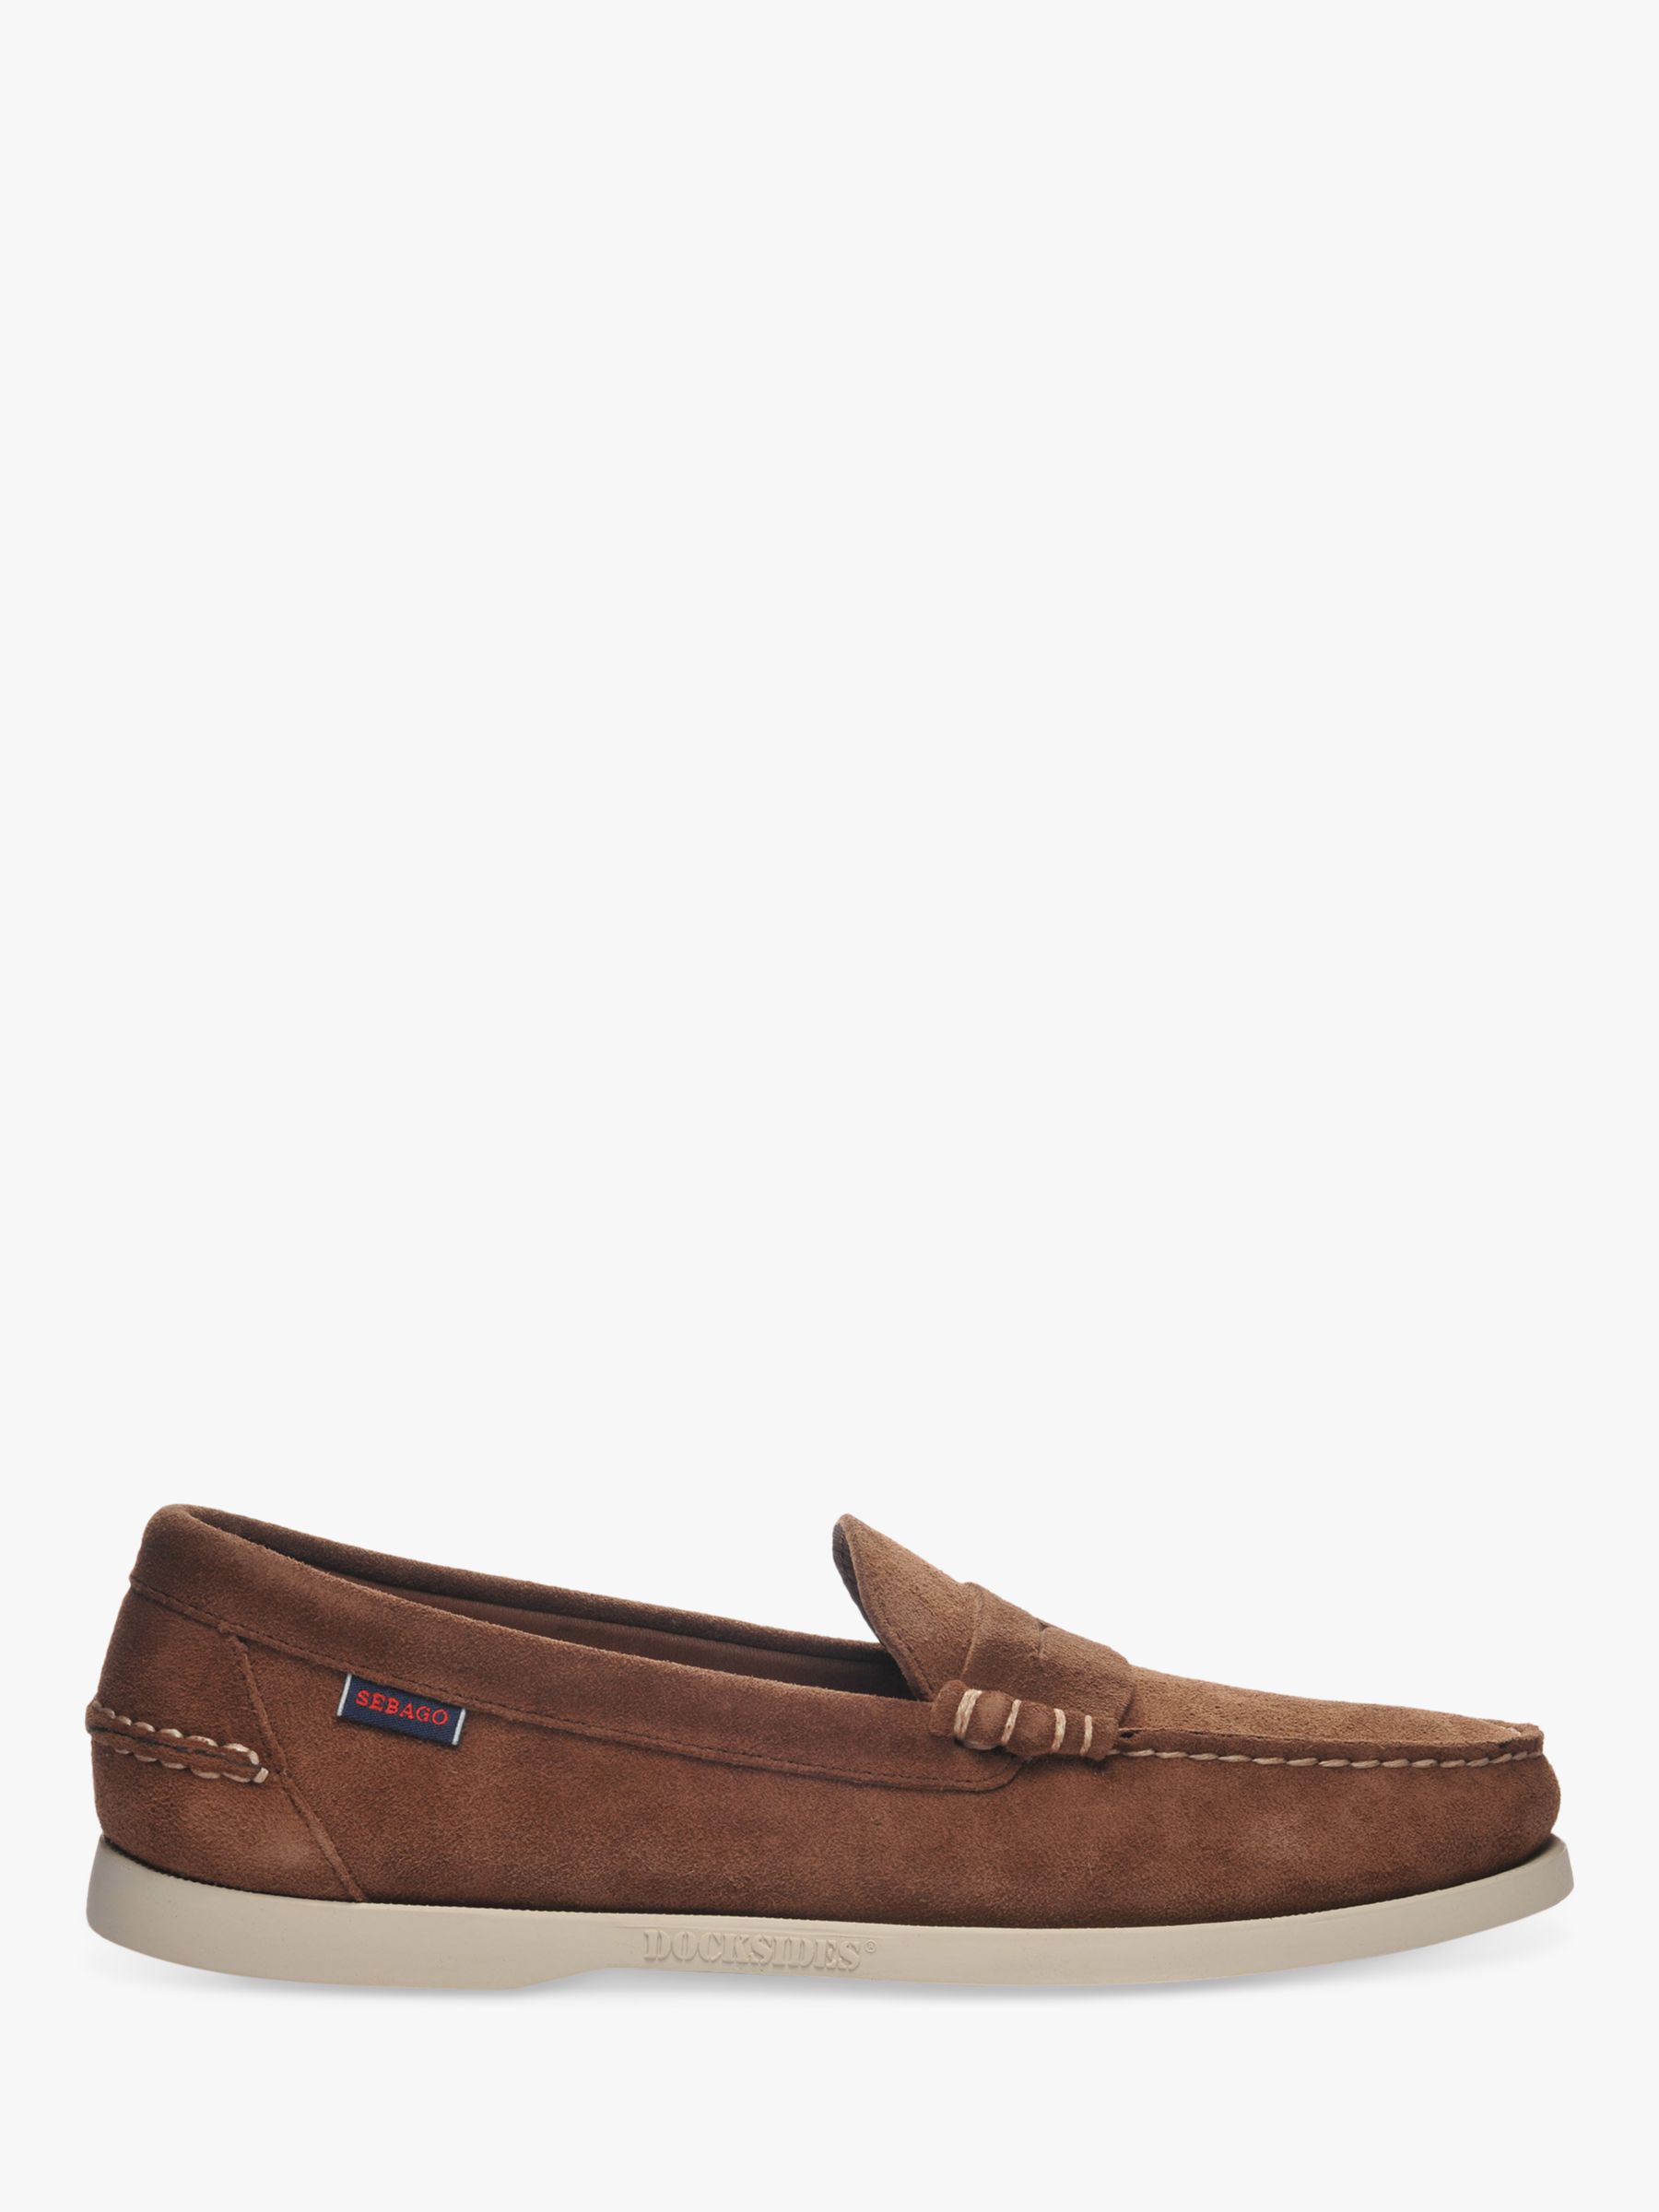 Sebago Dan Suede Boat Shoes, Dark Brown, 8